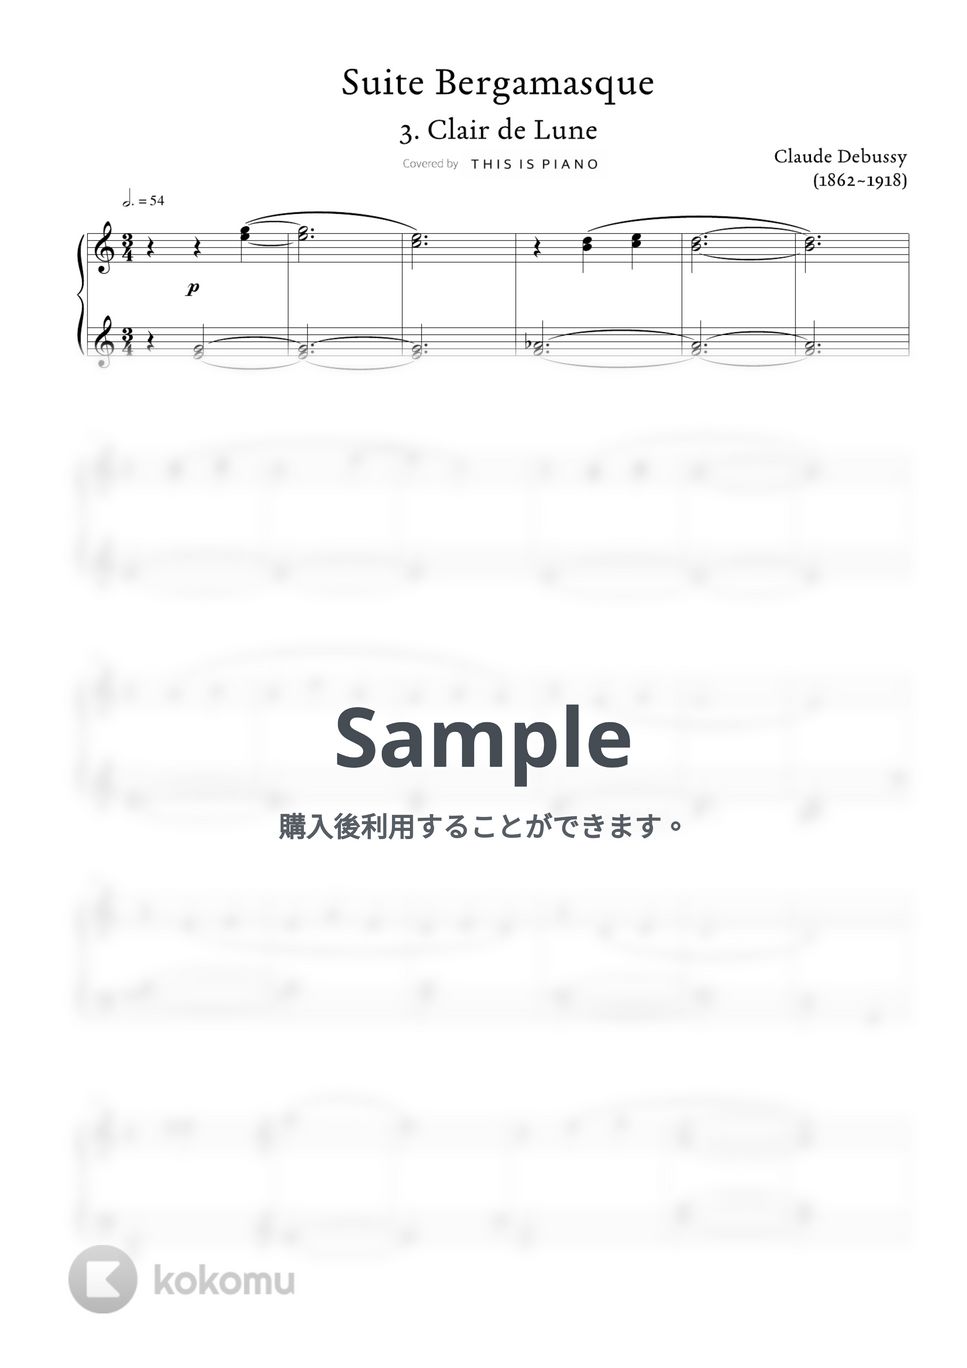 ドビュッシー - 月光 (中級バージョン) by THIS IS PIANO